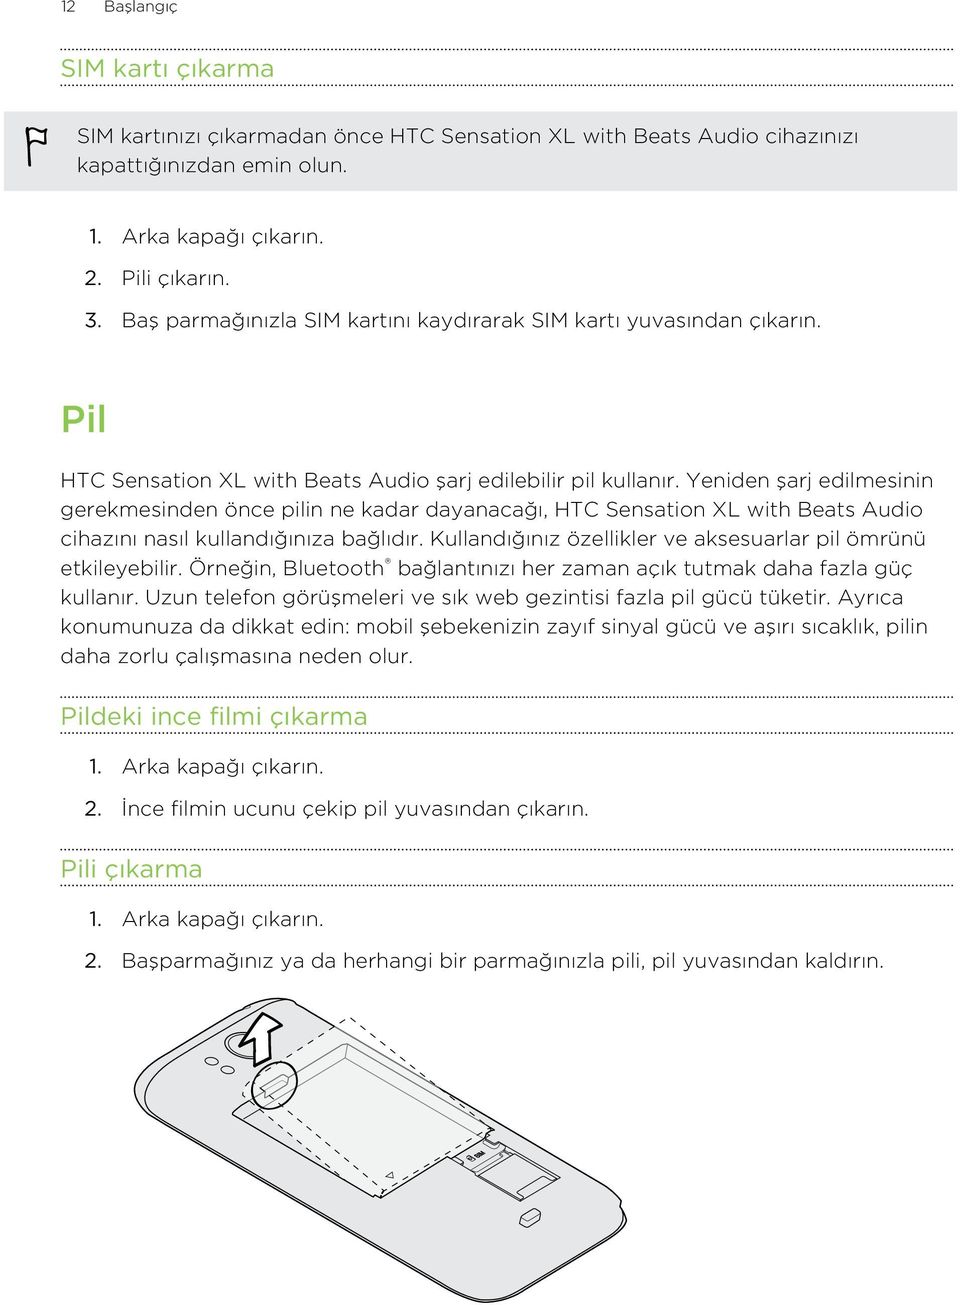 Yeniden şarj edilmesinin gerekmesinden önce pilin ne kadar dayanacağı, HTC Sensation XL with Beats Audio cihazını nasıl kullandığınıza bağlıdır.